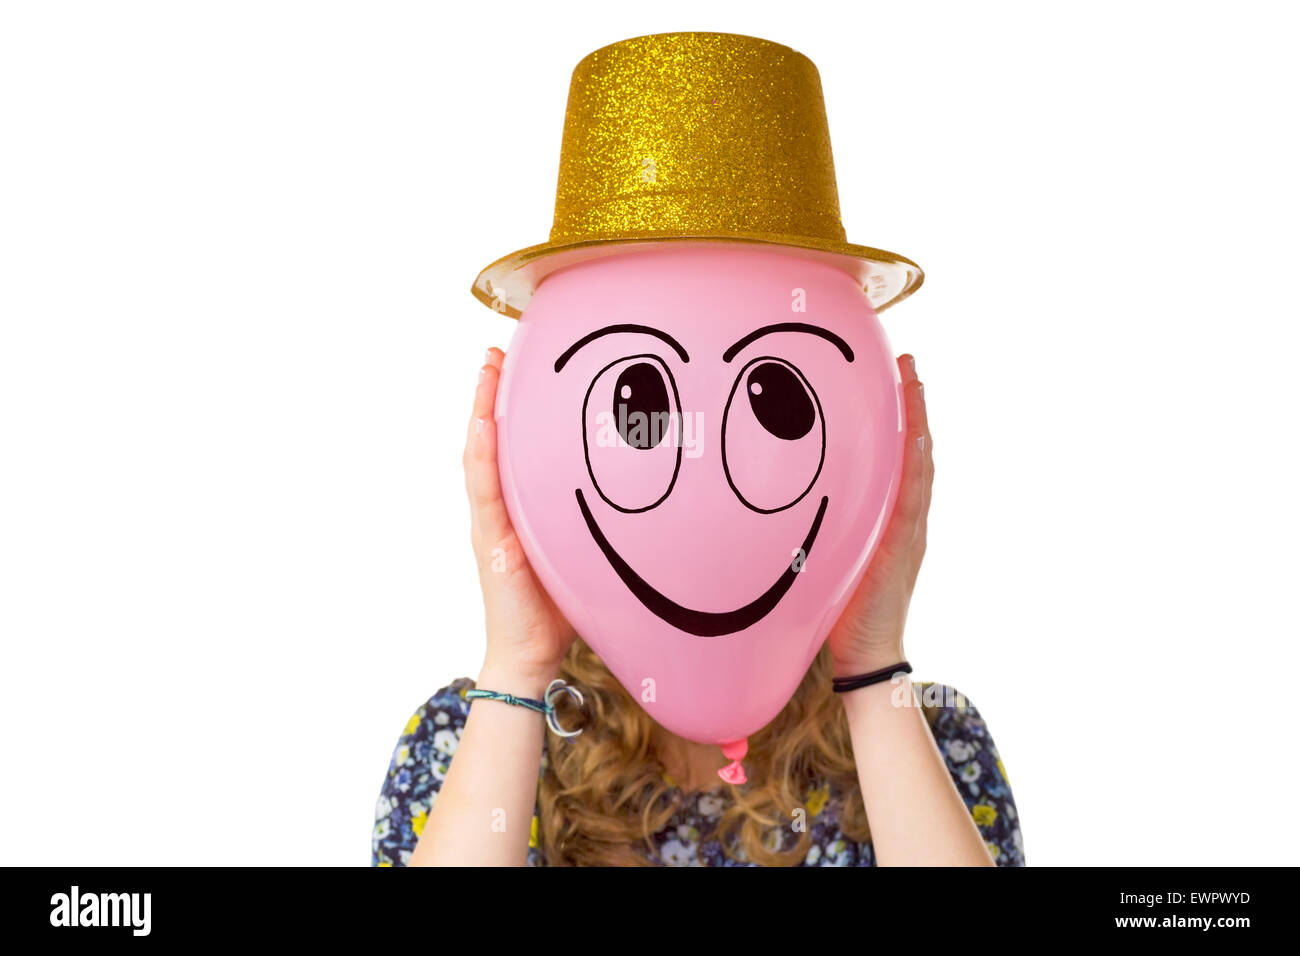 Mädchen halten Ballon mit Ausdruck von lächelnden Gesicht und gold Hut isoliert auf weißem Hintergrund Stockfoto